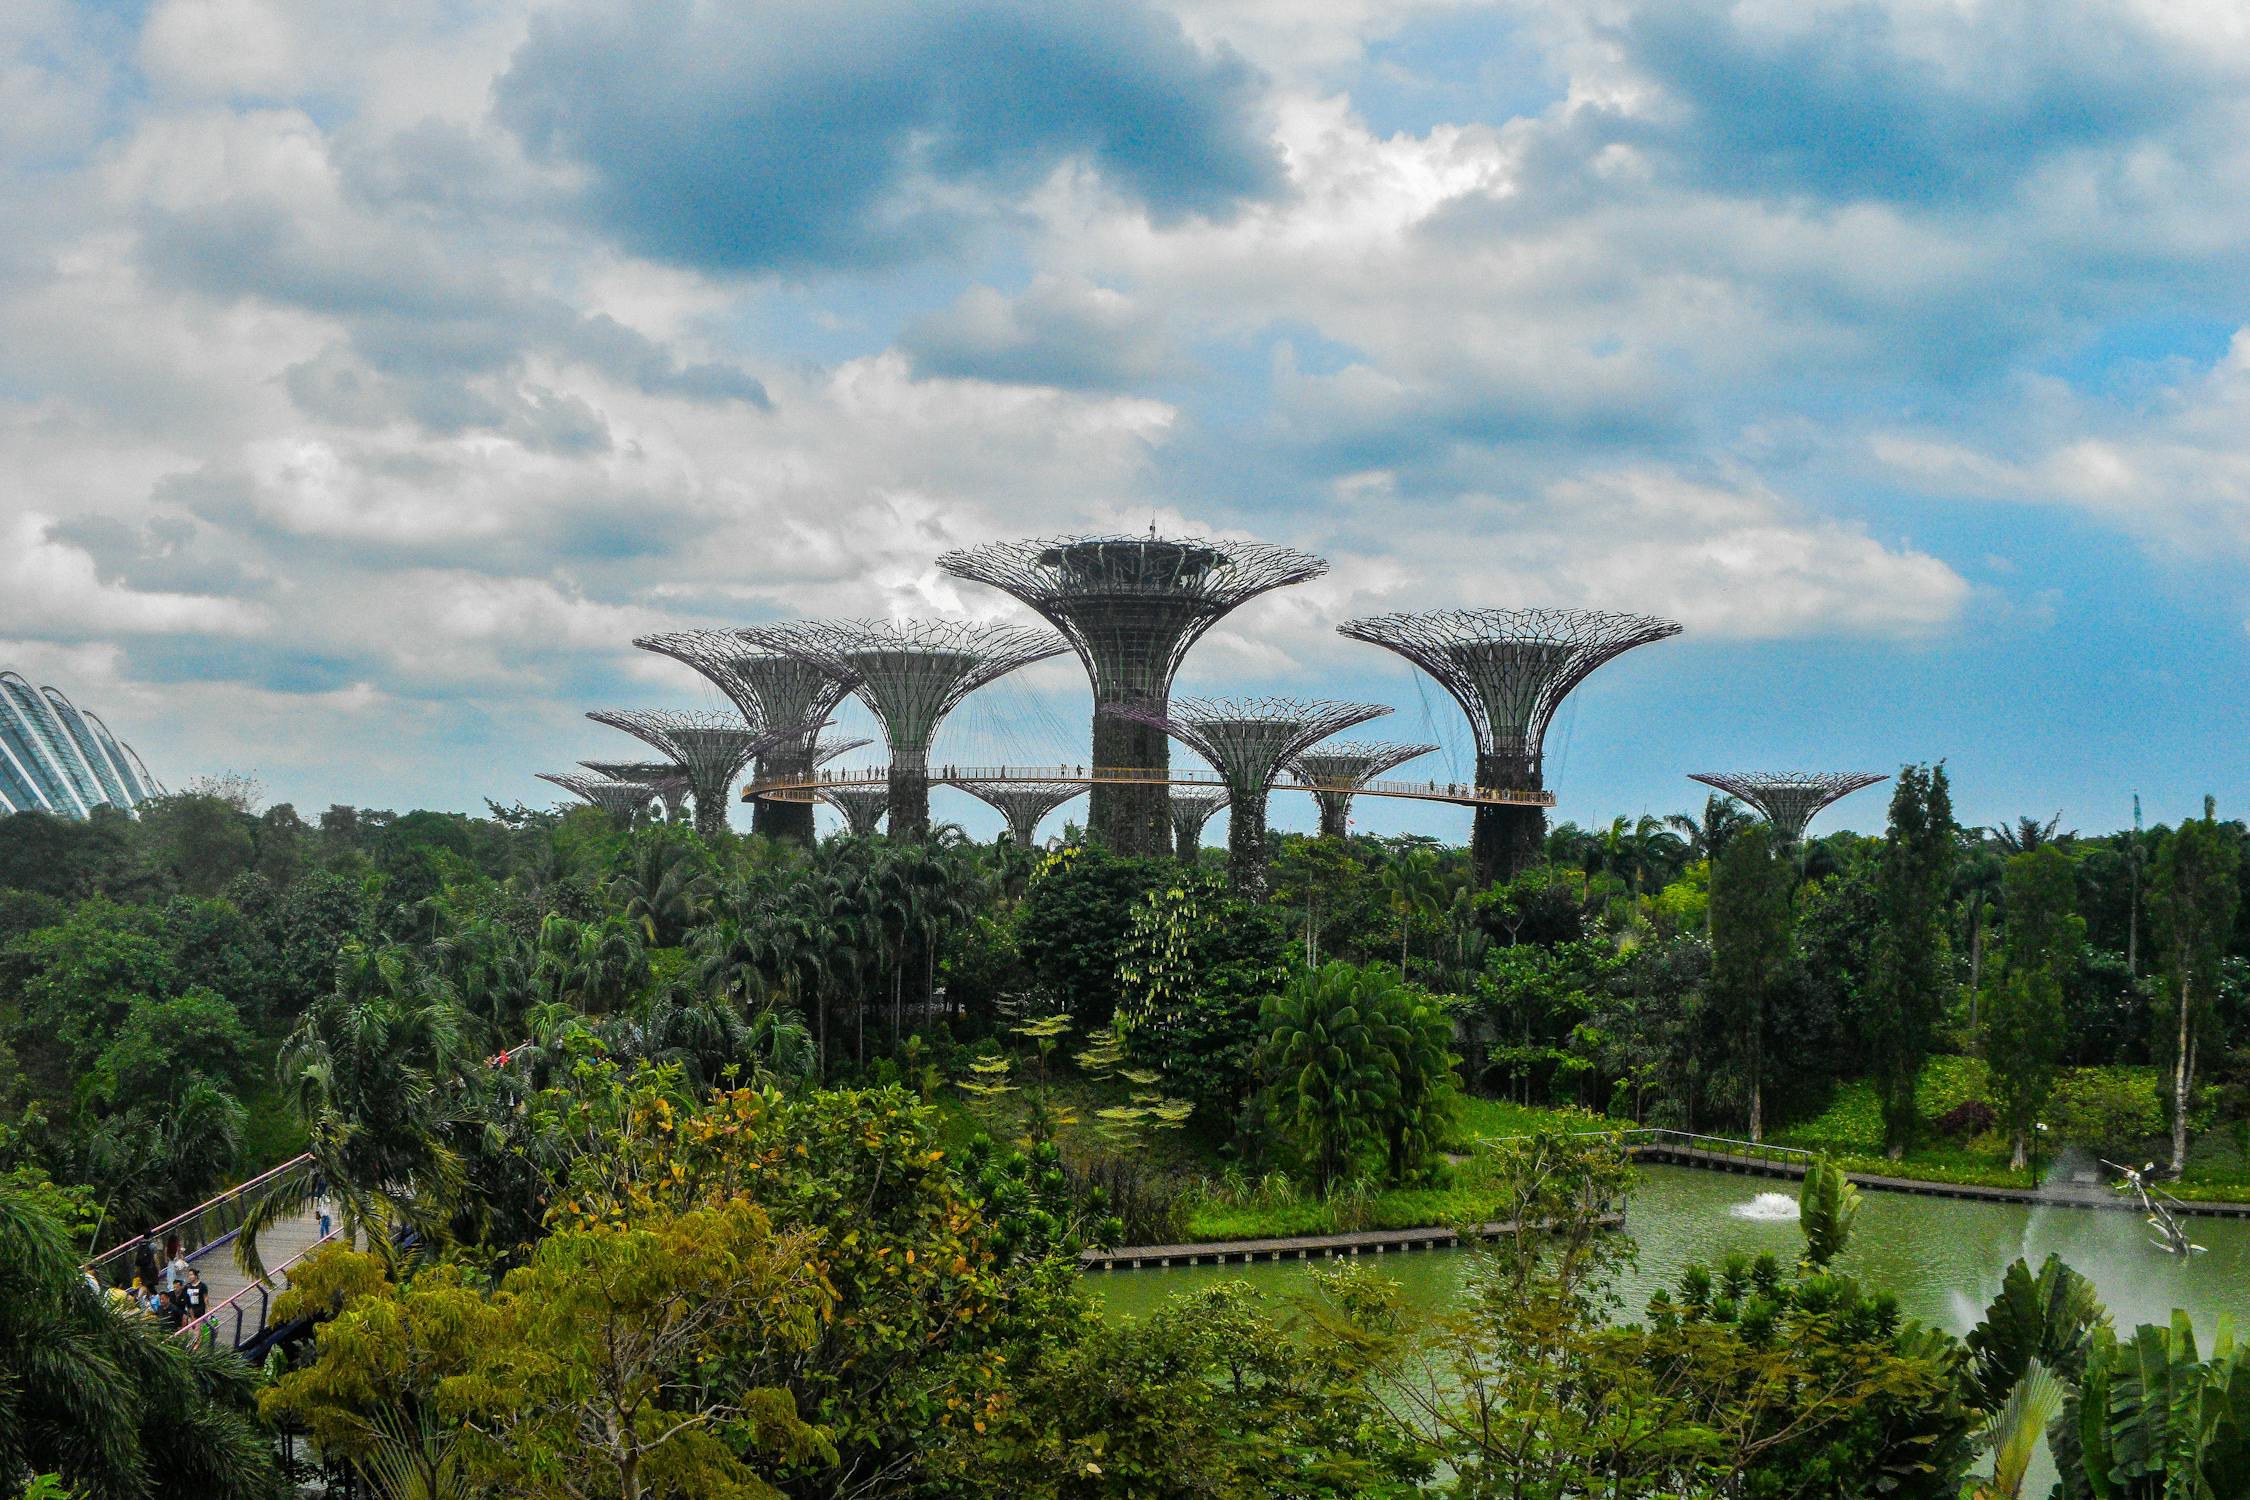 Eco-modernist city of Singapore